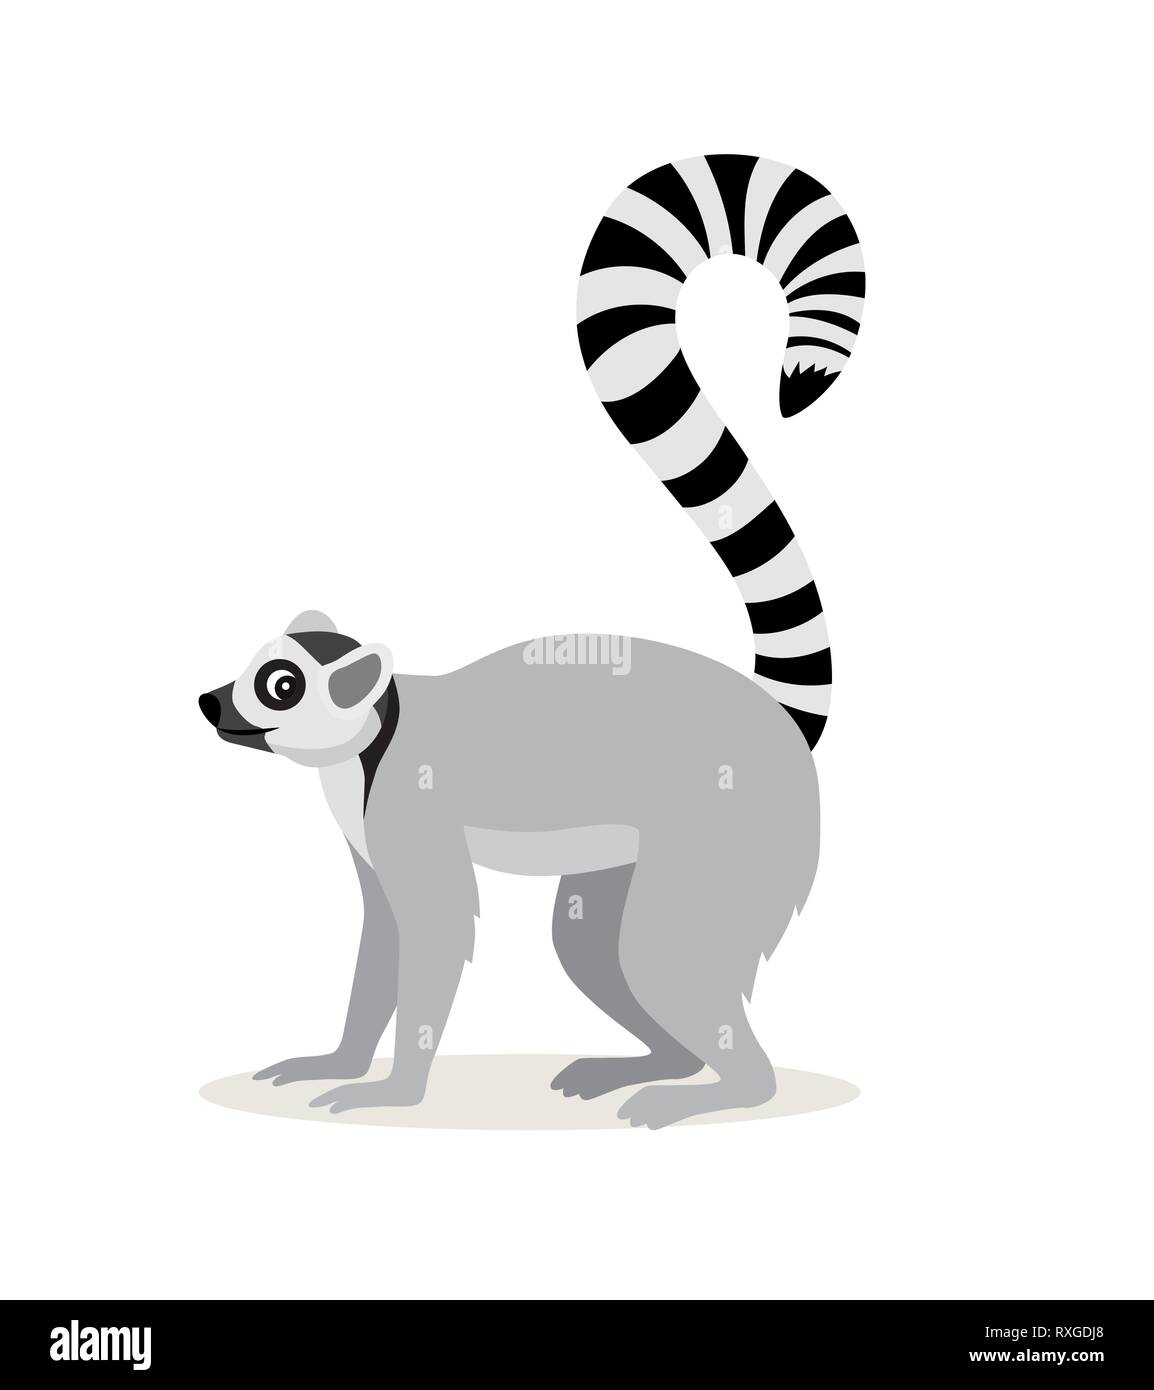 Afrikanische Tier, niedliche lemur mit gestreiften long tail Symbol auf weißem Hintergrund, Vektor Stock Vektor